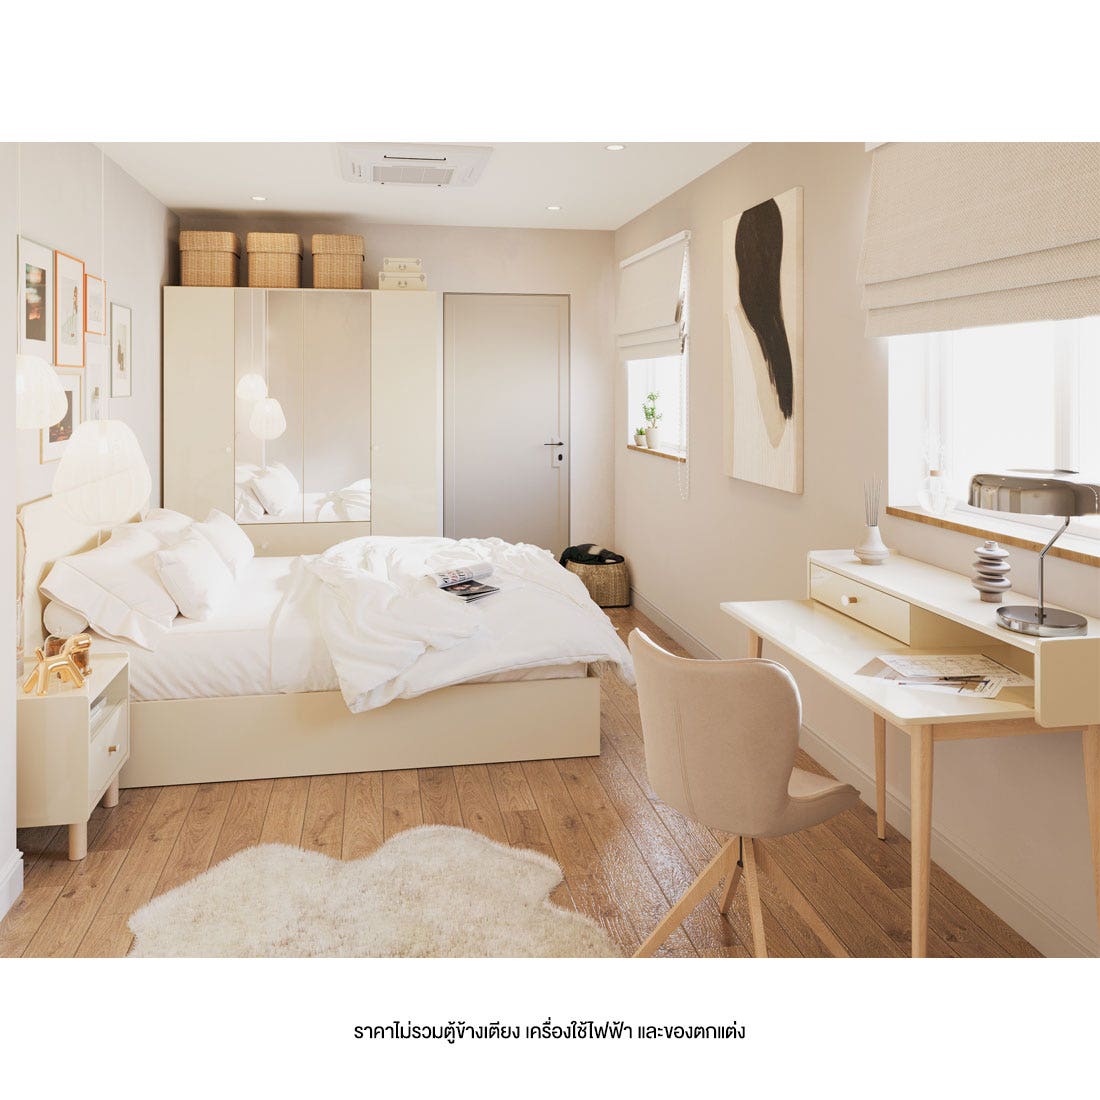 ชุดห้องนอน 6 ฟุต รุ่น Blanca สีครีม มิดกรอส01